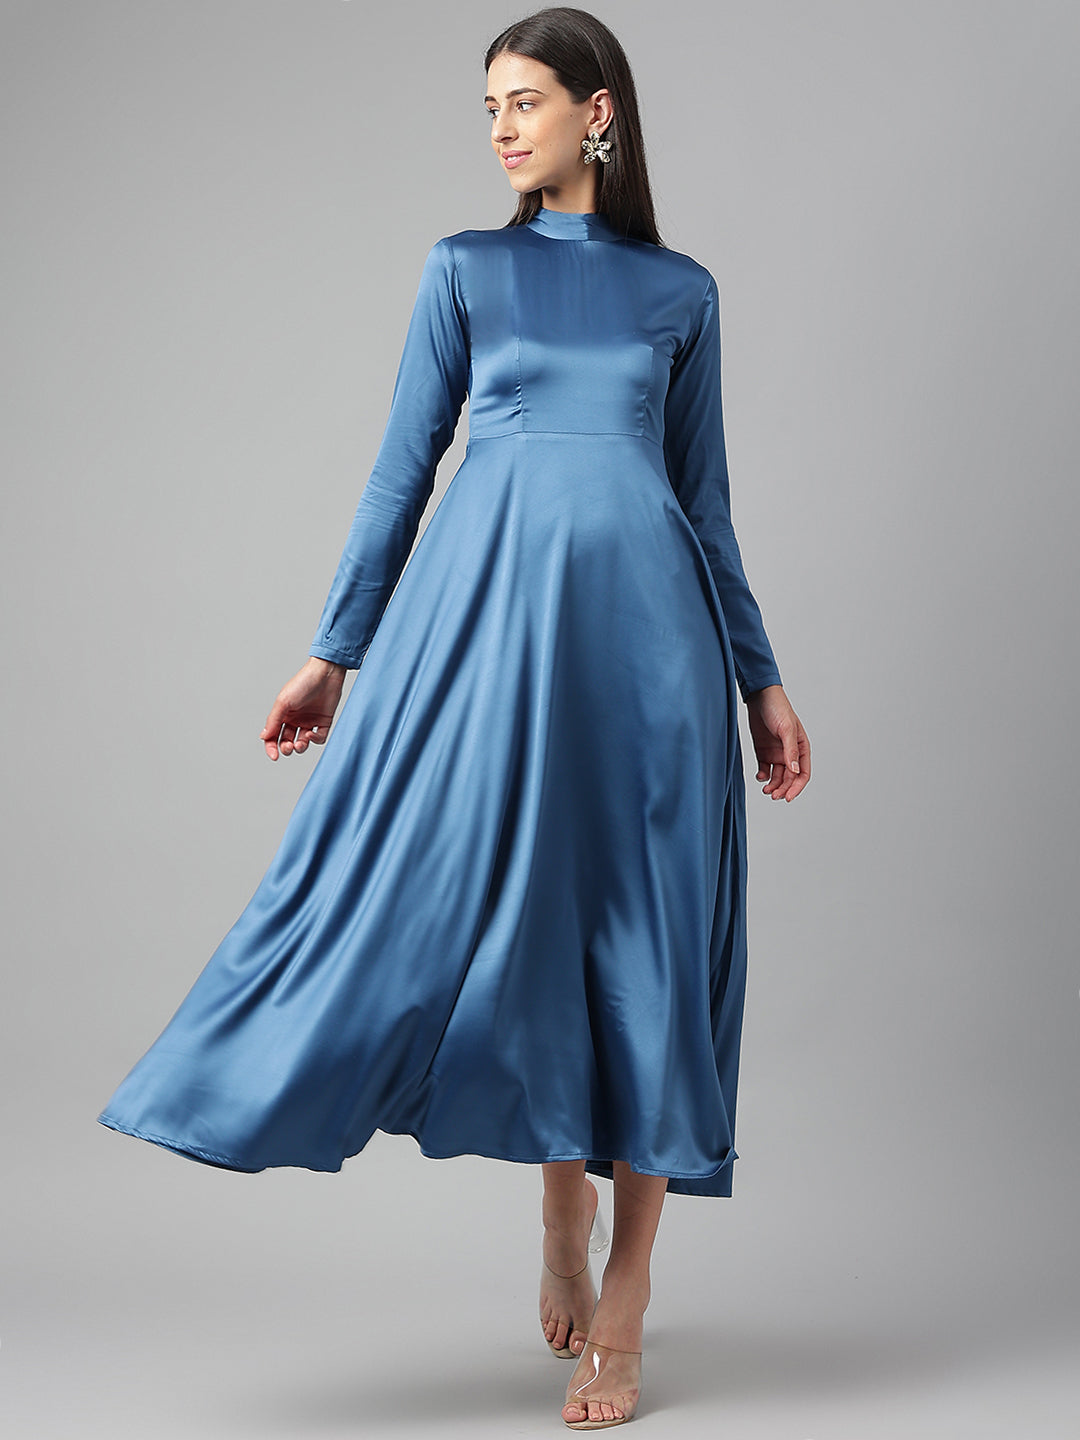 Light Blue Maxi Dress - Satin Maxi Dress - Mermaid Maxi Dress - Lulus